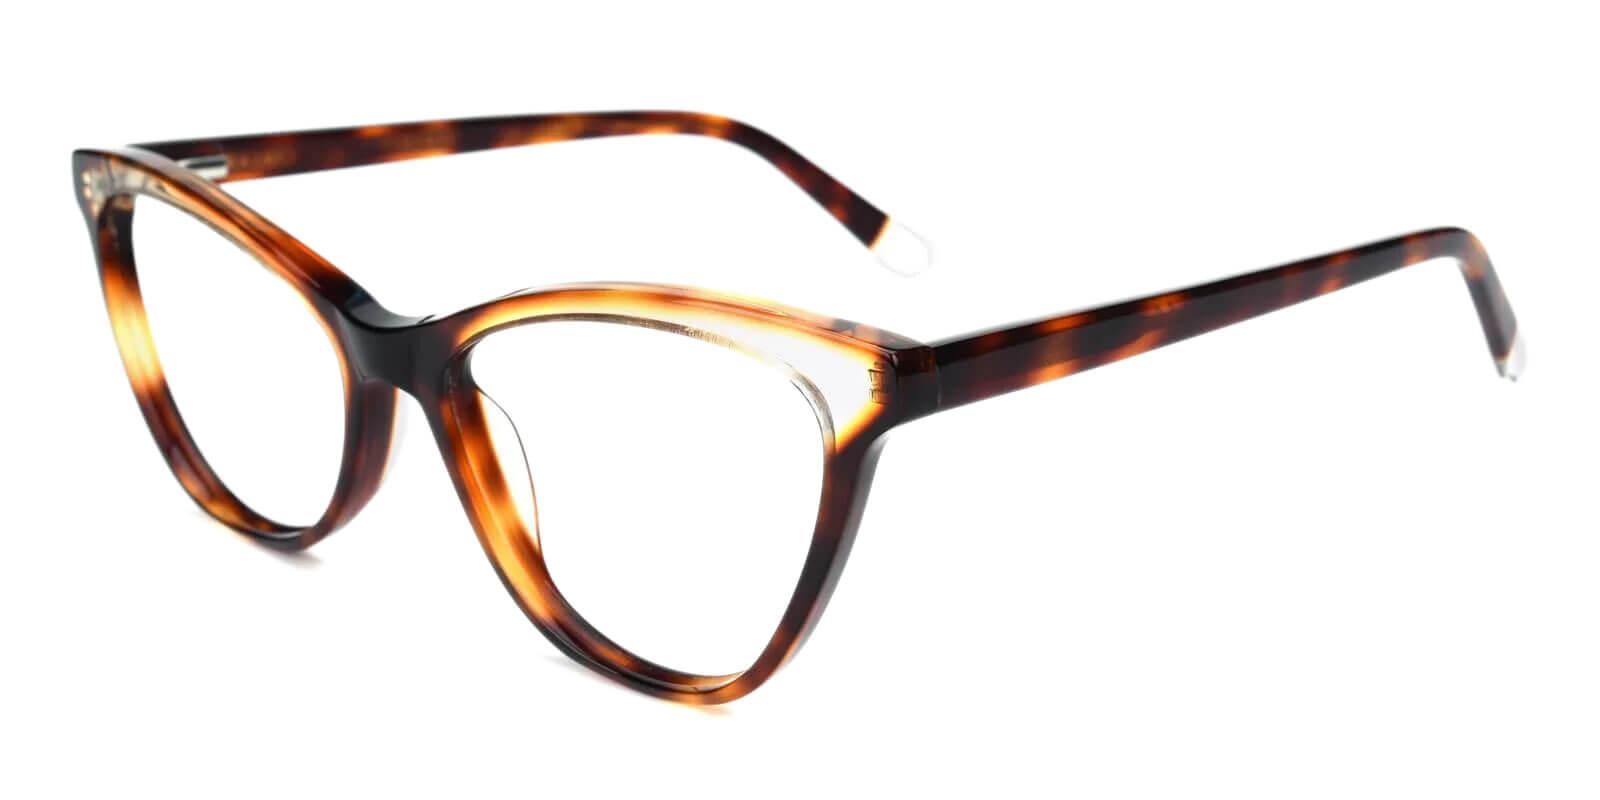 Luznic Tortoise Acetate Eyeglasses , UniversalBridgeFit Frames from ABBE Glasses